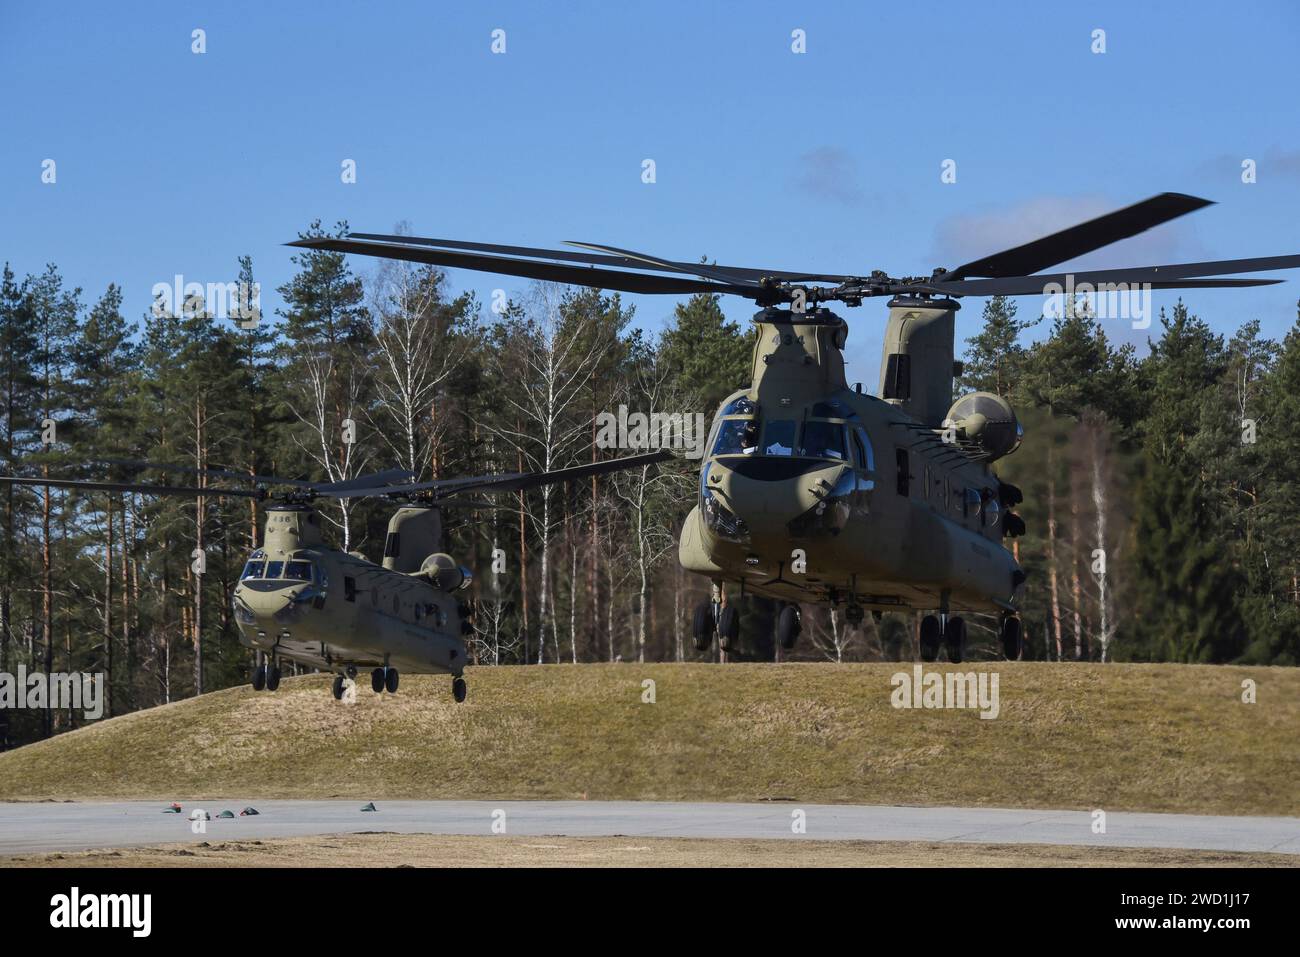 Deux hélicoptères CH-47 Chinook de l'armée américaine décollent de la zone d'entraînement de Grafenwoehr, en Allemagne. Banque D'Images